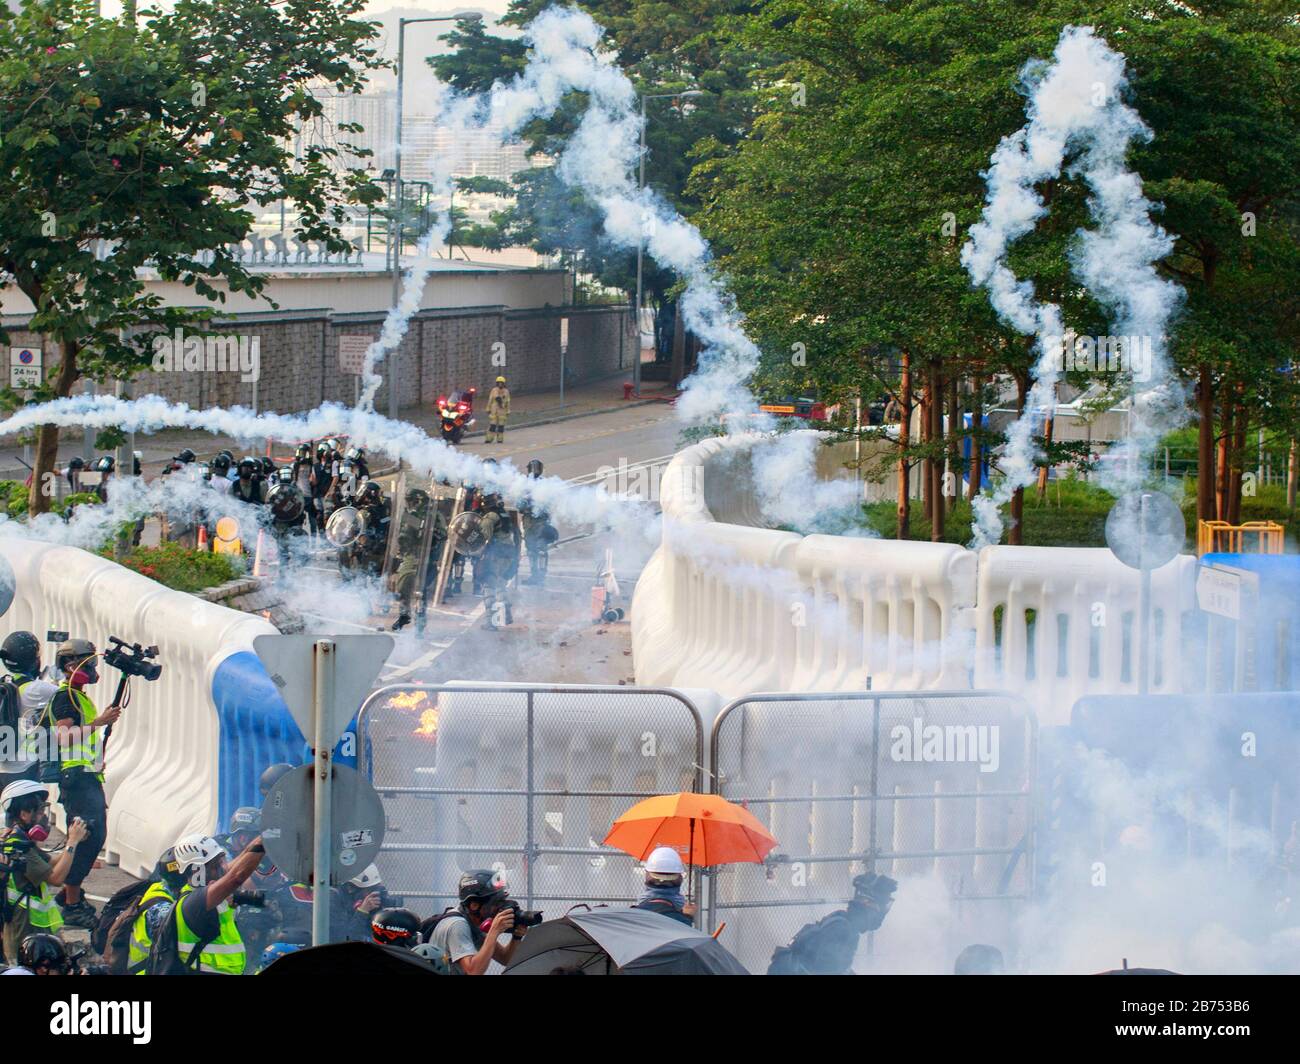 Protestes utilise le cocktail molotov et les rochers pour attaquer le siège des gouvernmen. La police utilise plus tard des canons à eau et des gaz lacrymogènes pour disperser les manifestants. Banque D'Images